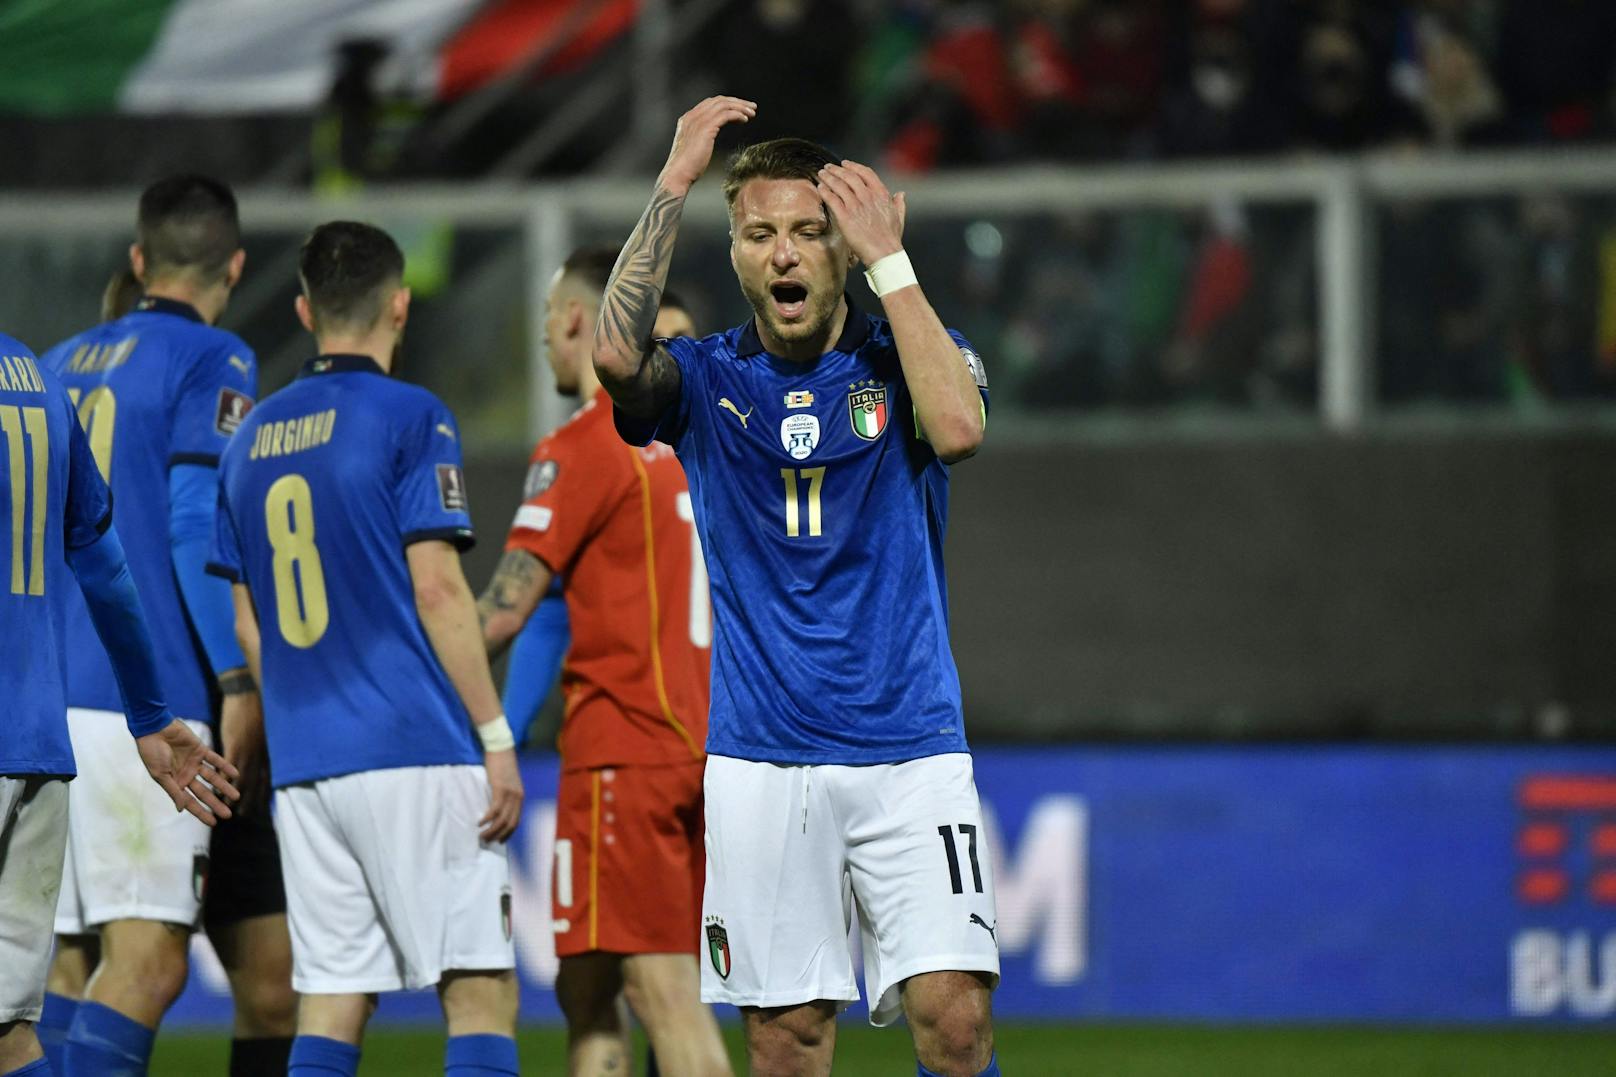 Italien stolperte im Play-off gegen Nordmazedonien, die Chance auf das WM-Ticket am "grünen Tisch" lebt allerdings noch. 